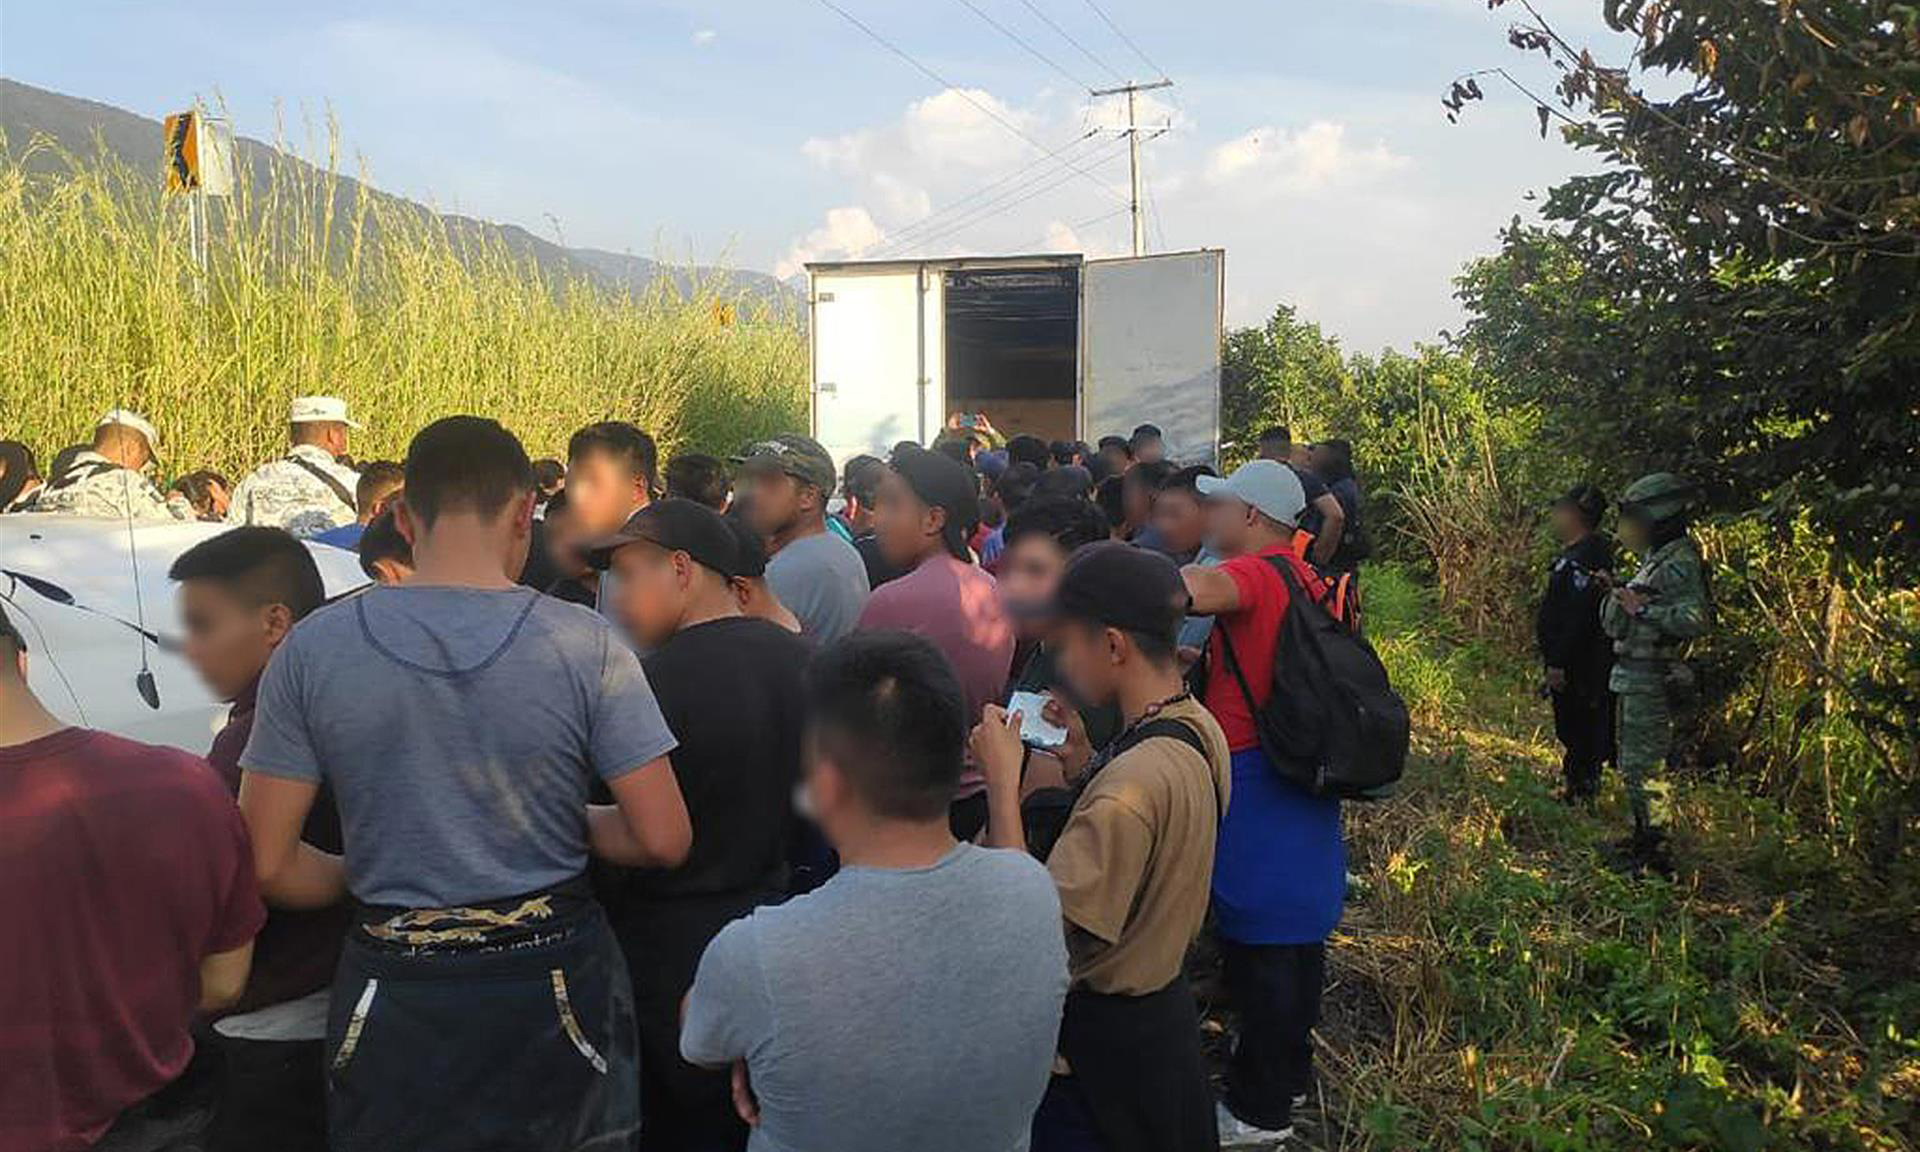 Encuentran a 82 migrantes hacinados en camión de carga en México